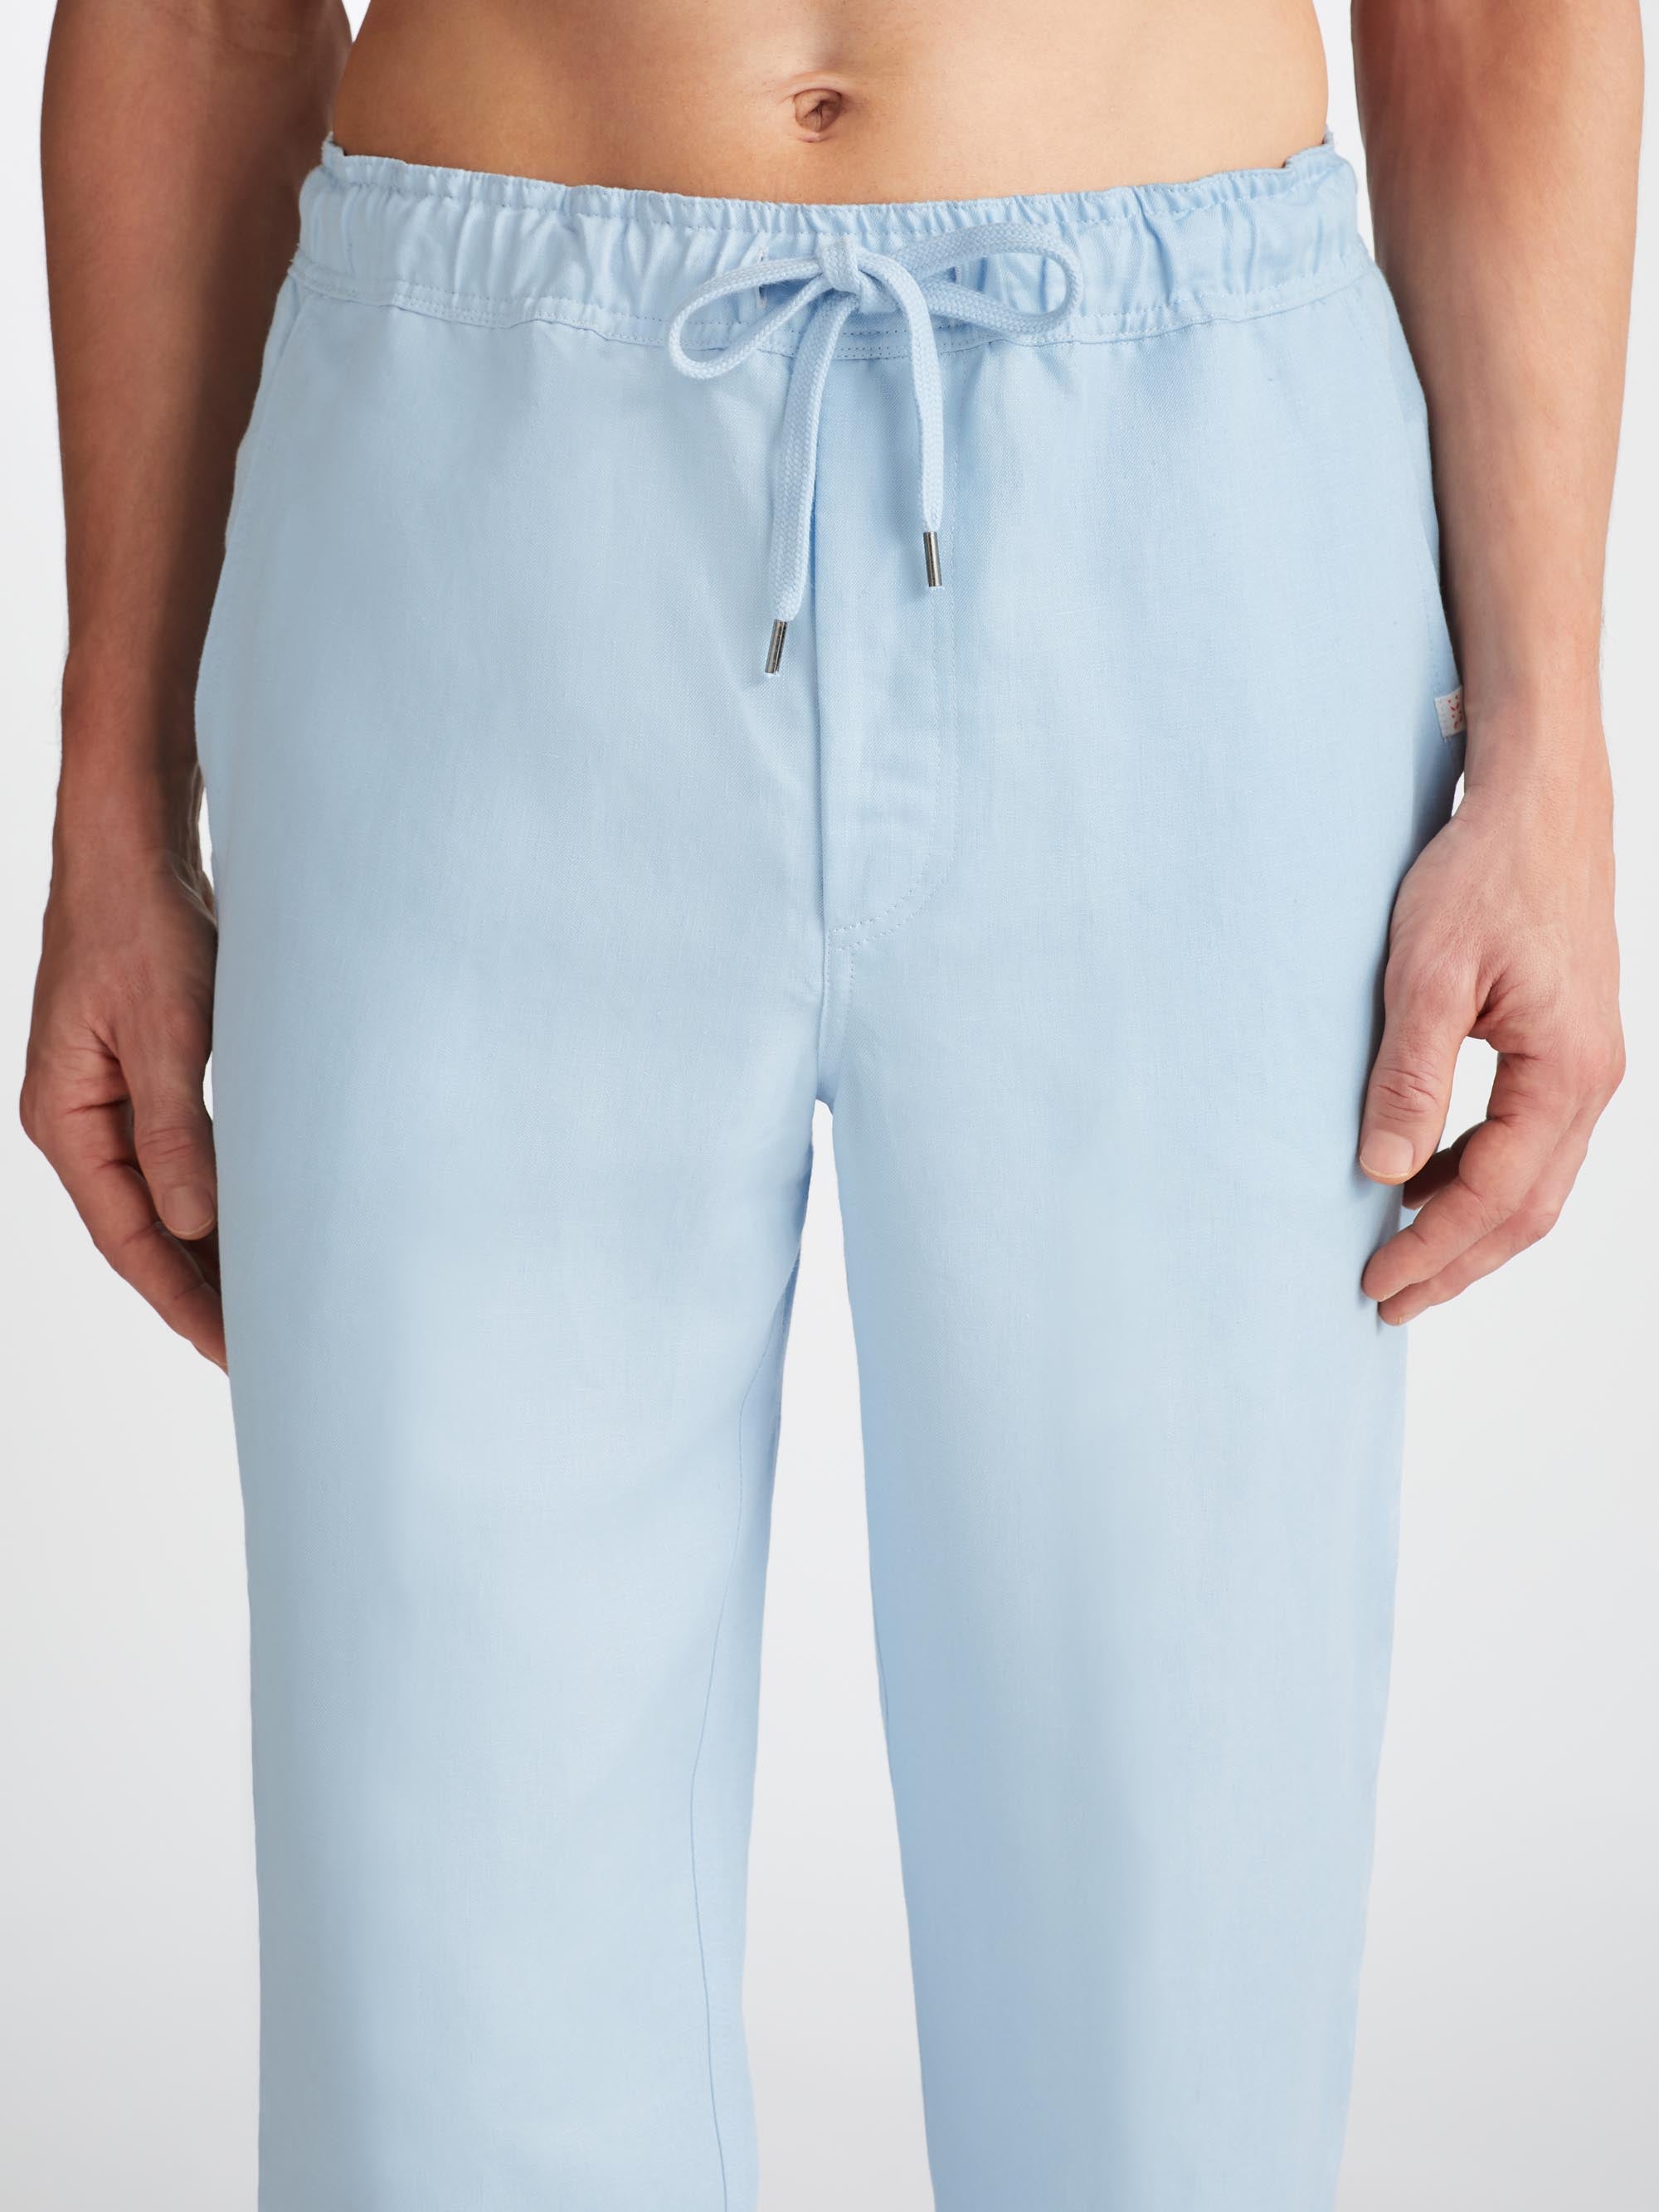 Men's Trousers Sydney 2 Linen Blue